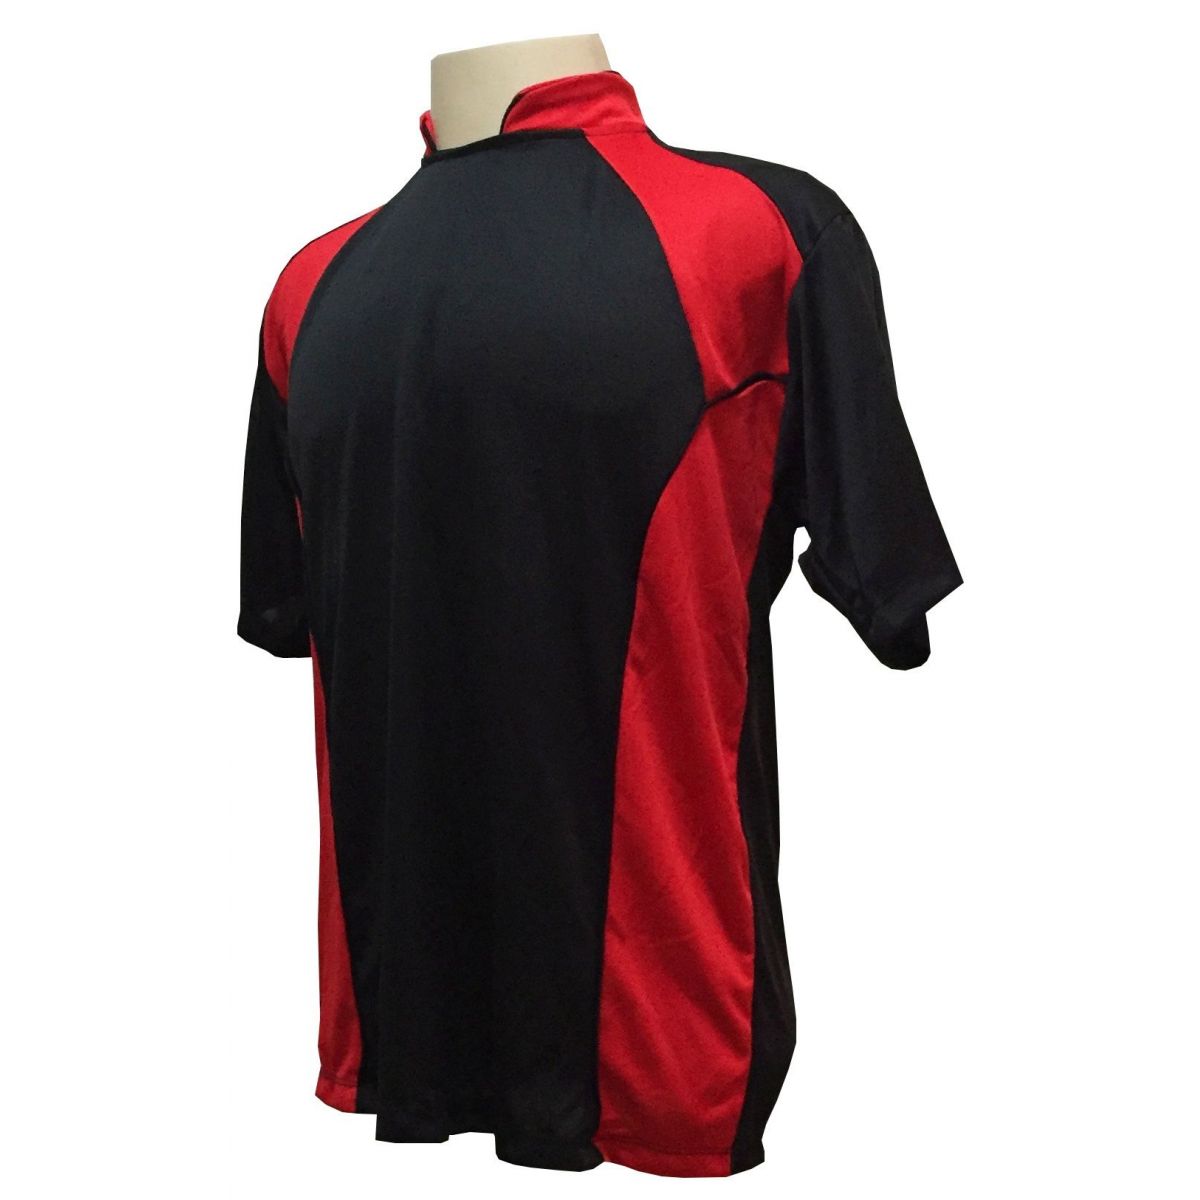 Uniforme Esportivo com 14 camisas modelo Suécia Preto/Vermelho + 14 calções modelo Madrid + 1 Goleiro + Brindes